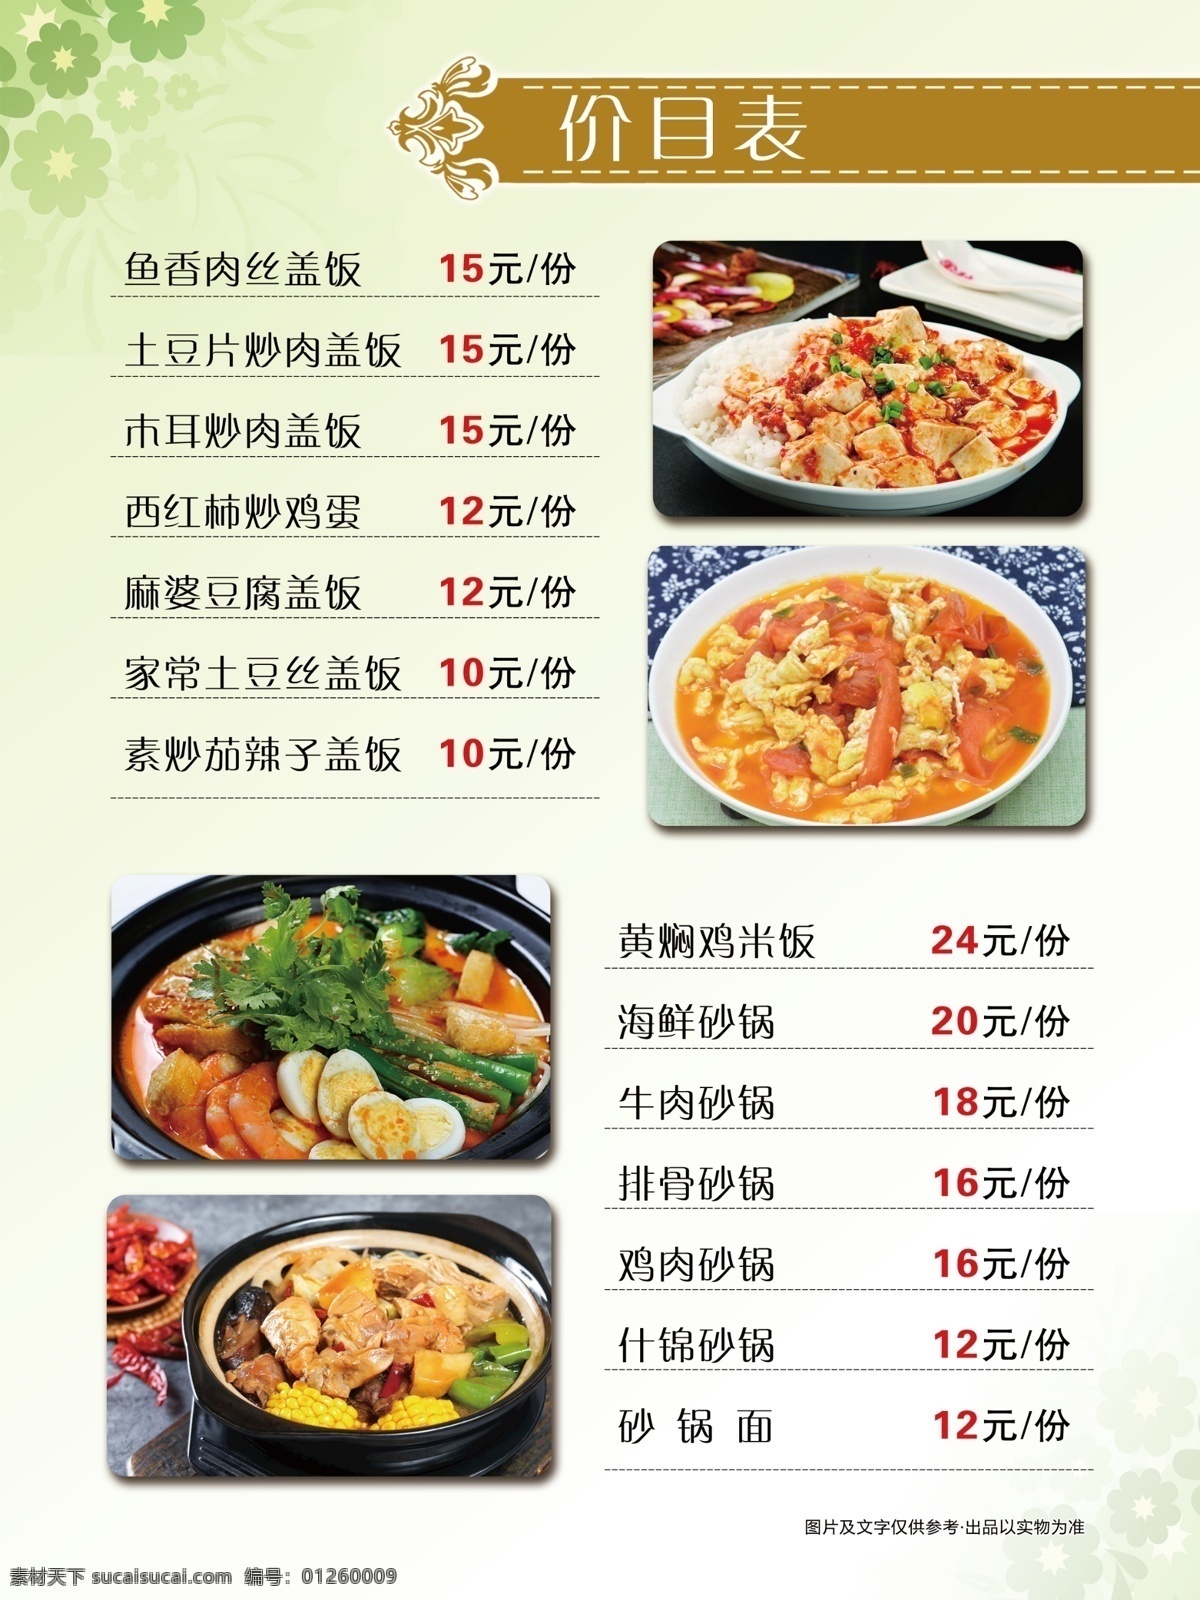 价目表 餐饮 火锅店 蛋糕店图片 菜单 食材 砂锅 西红柿 炒鸡蛋 绿色海报 展板 分层